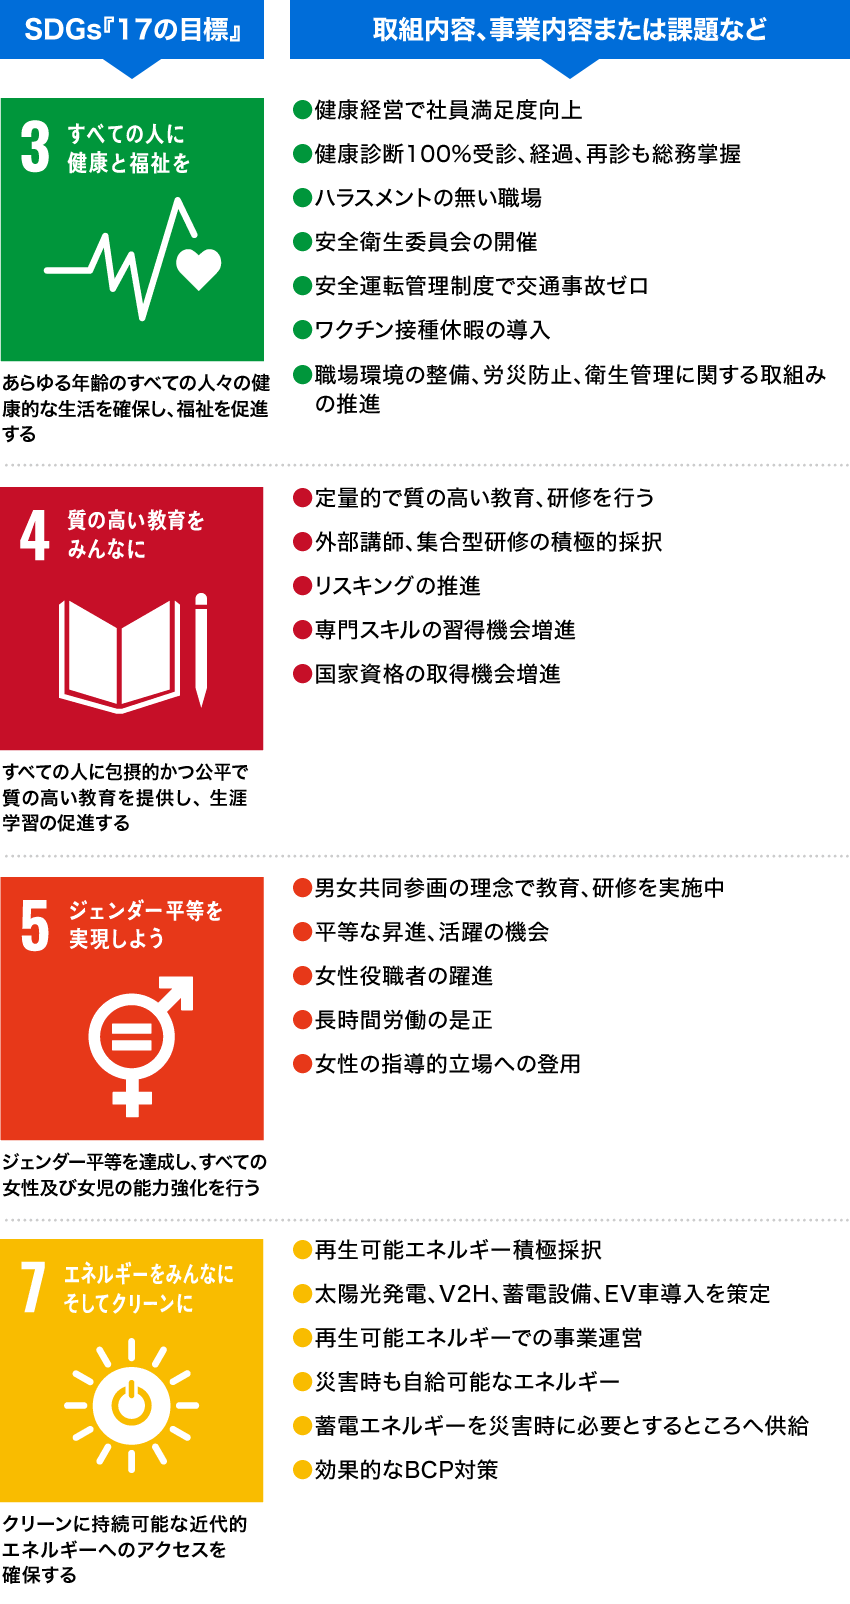 SDGs『17の目標』と取組内容、事業内容または課題など 1